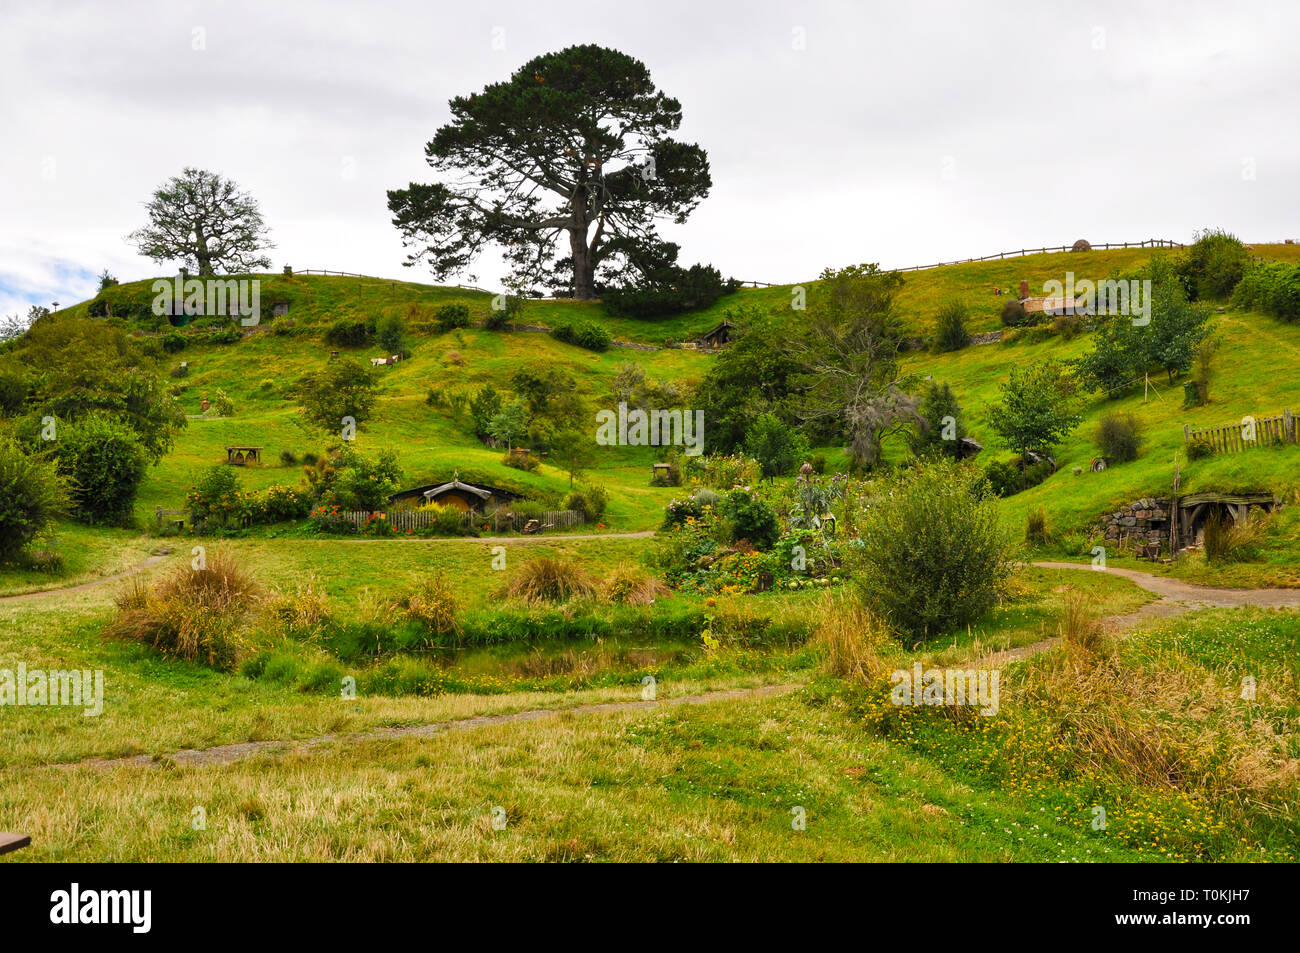 Hobbiton Movie set - Location per il Signore degli Anelli e Lo Hobbit film. Foro di Hobbit porte. Attrazione turistica nella regione di Waikato in Nuova Zelanda Foto Stock